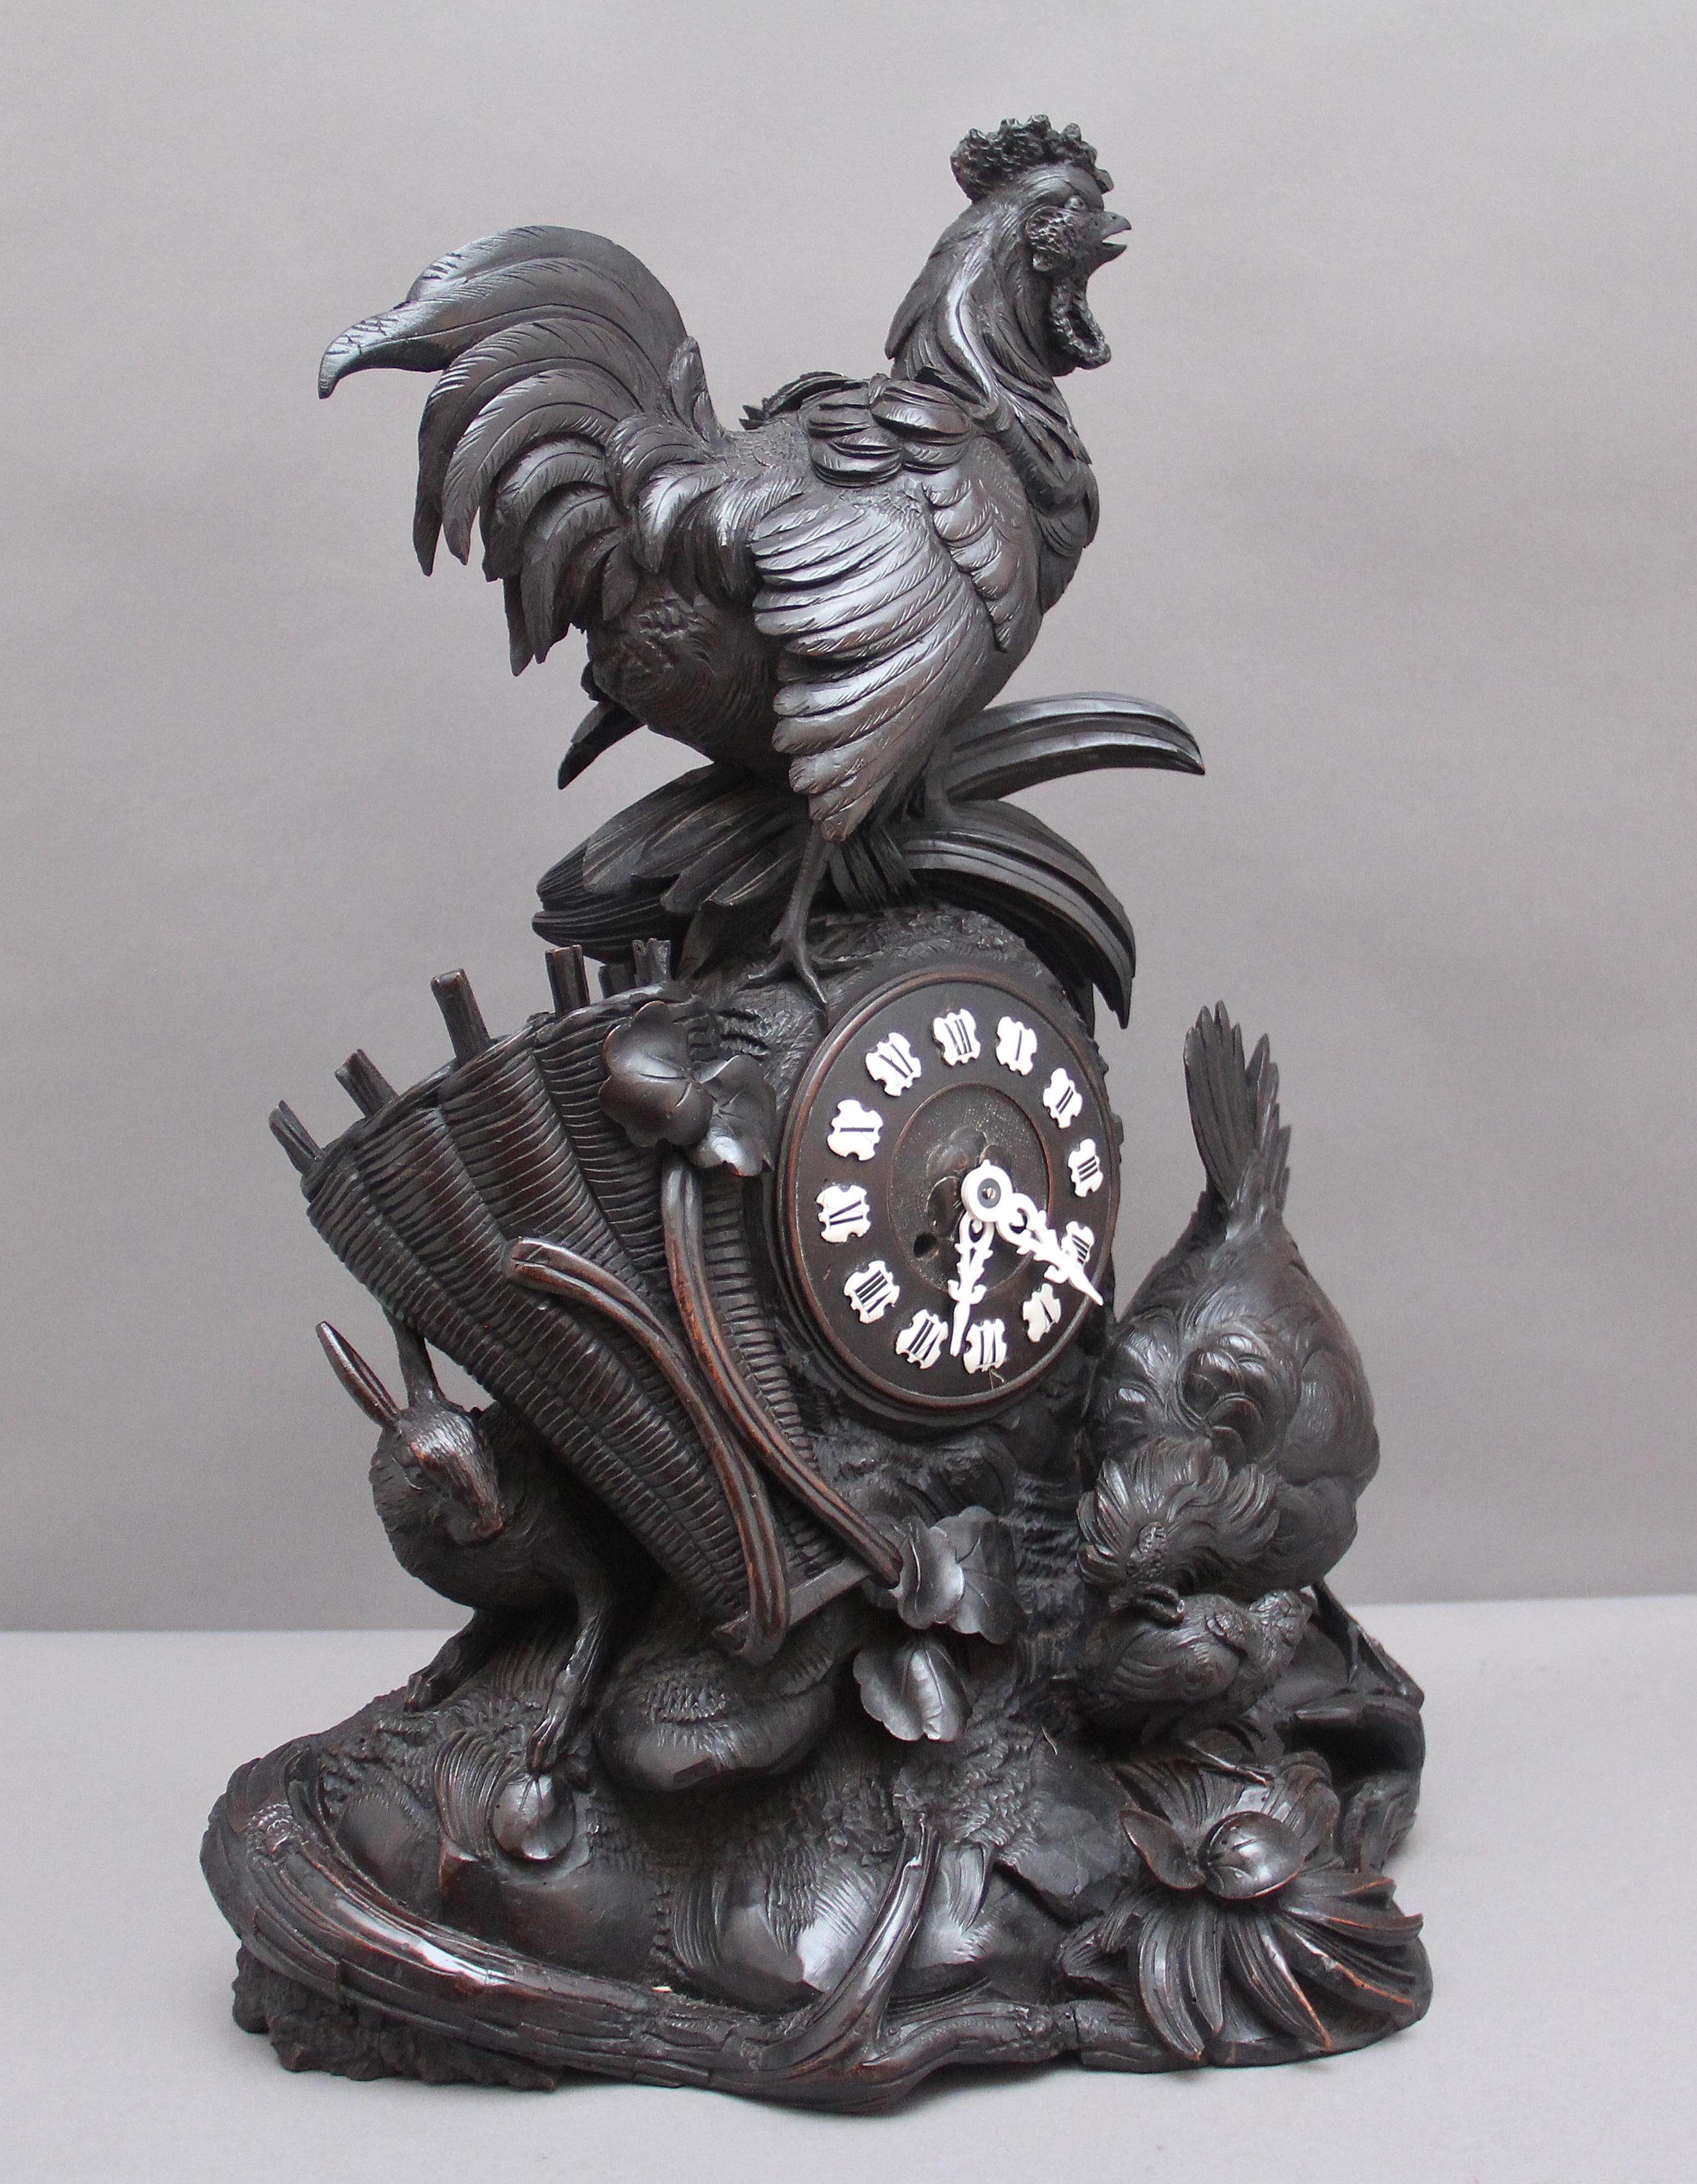 Eine schöne Qualität 19. Jahrhundert Schwarzwald Mantel Uhr, die Uhr Zifferblatt in der Mitte in einem Bauernhof Szene, bestehend aus einem Hahn an der Spitze und ein Huhn, Küken und Hase unten von verschiedenen Laub umgeben, die Uhr schlägt auf die